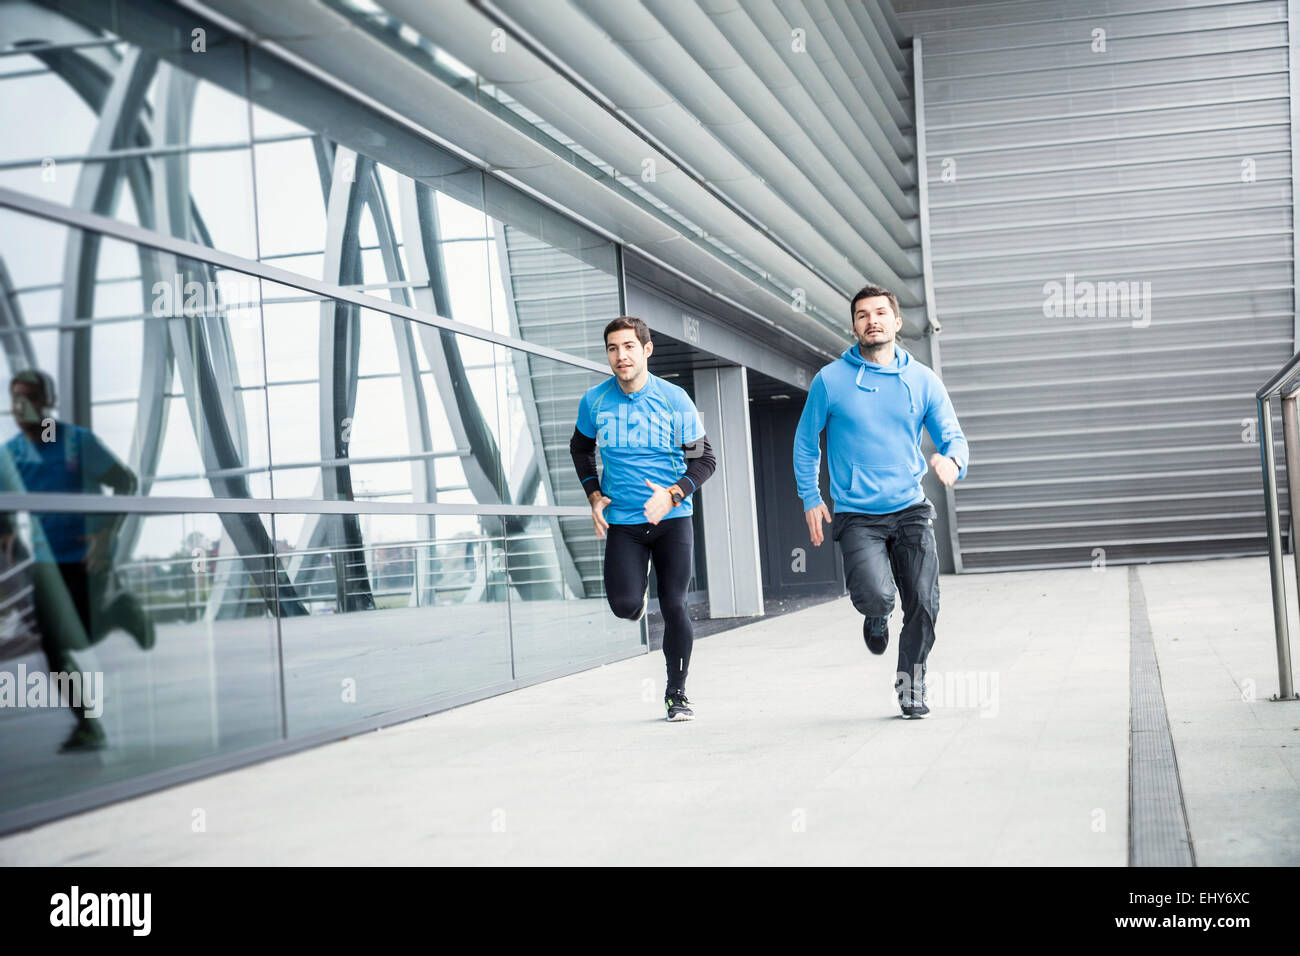 Zwei Männer sprinten nebeneinander in Stadt Stockfoto